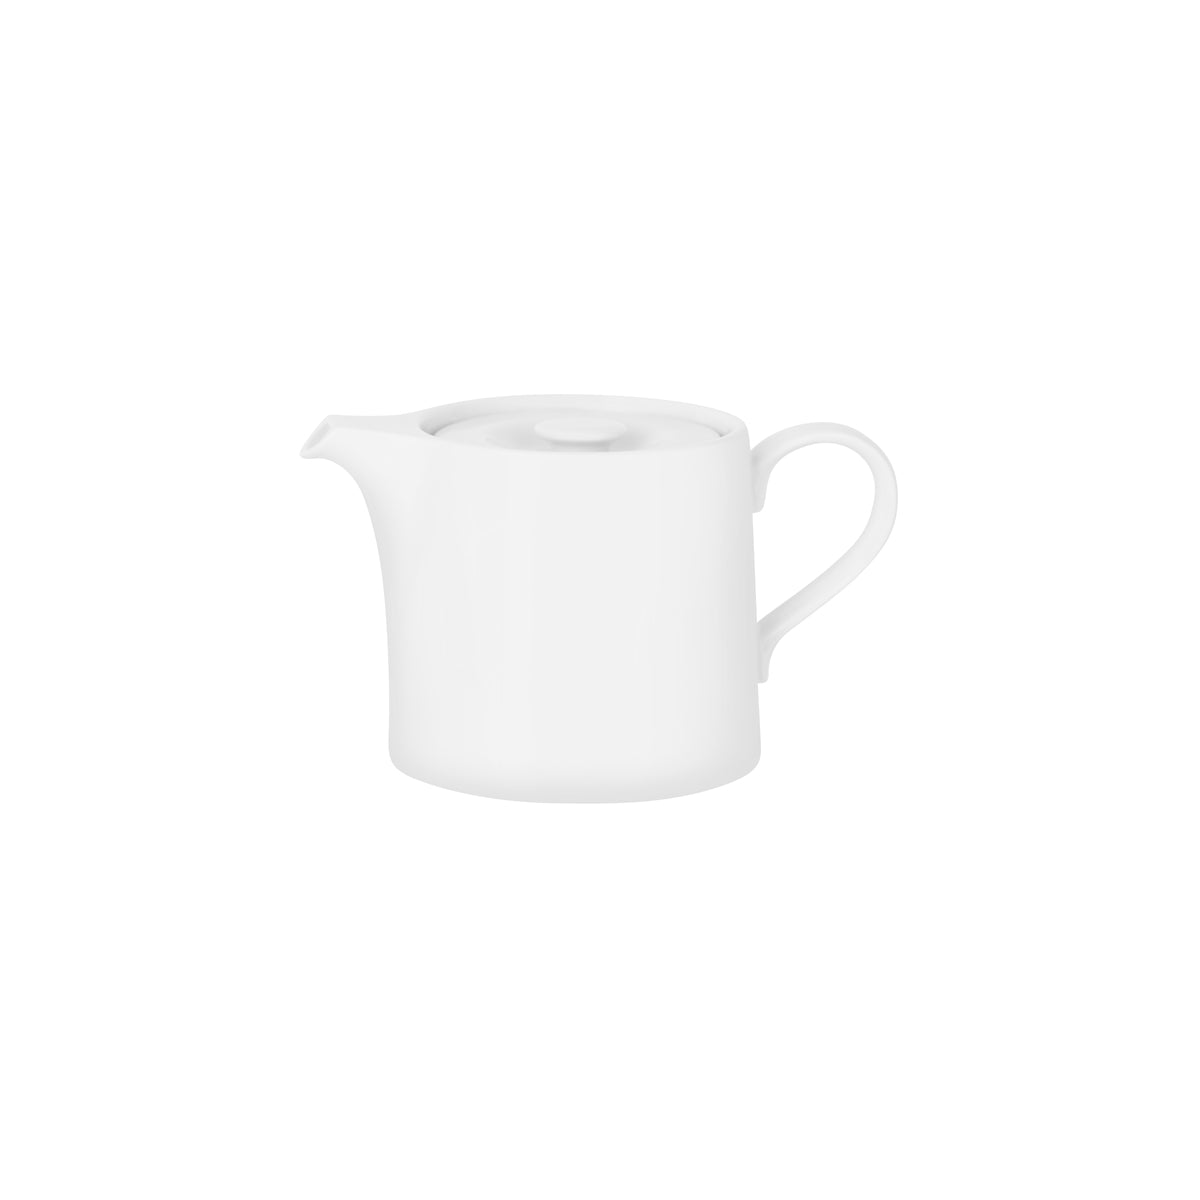 94910 Royal Porcelain White Album Teapot with Lid 400ml Tomkin Australia Hospitality Supplies